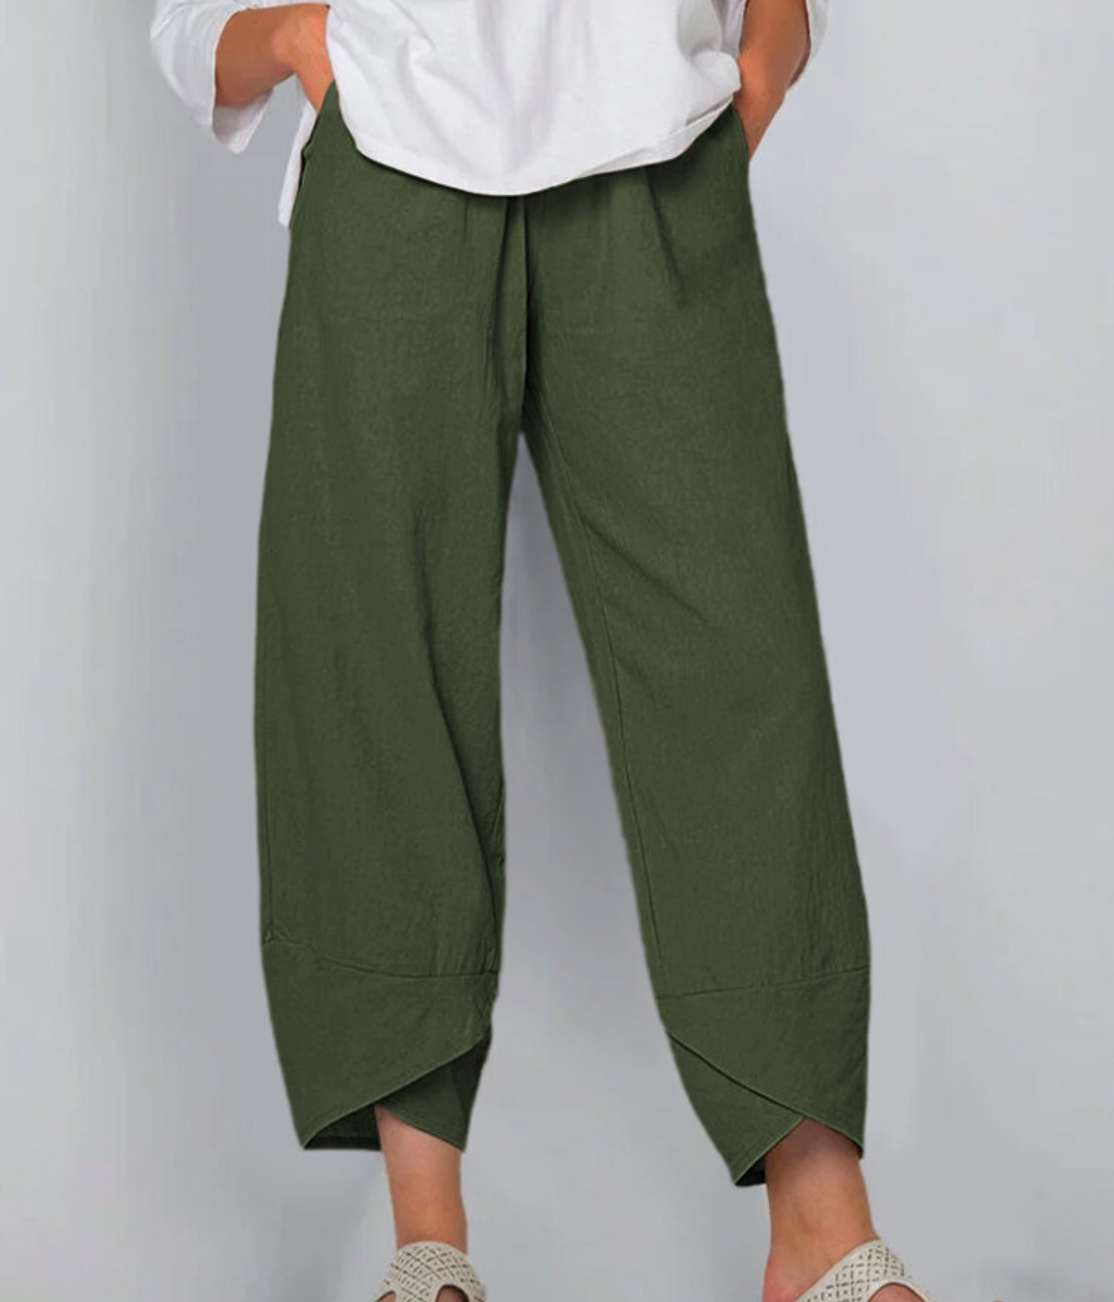 FIANA - Le pantalon stylé et unique